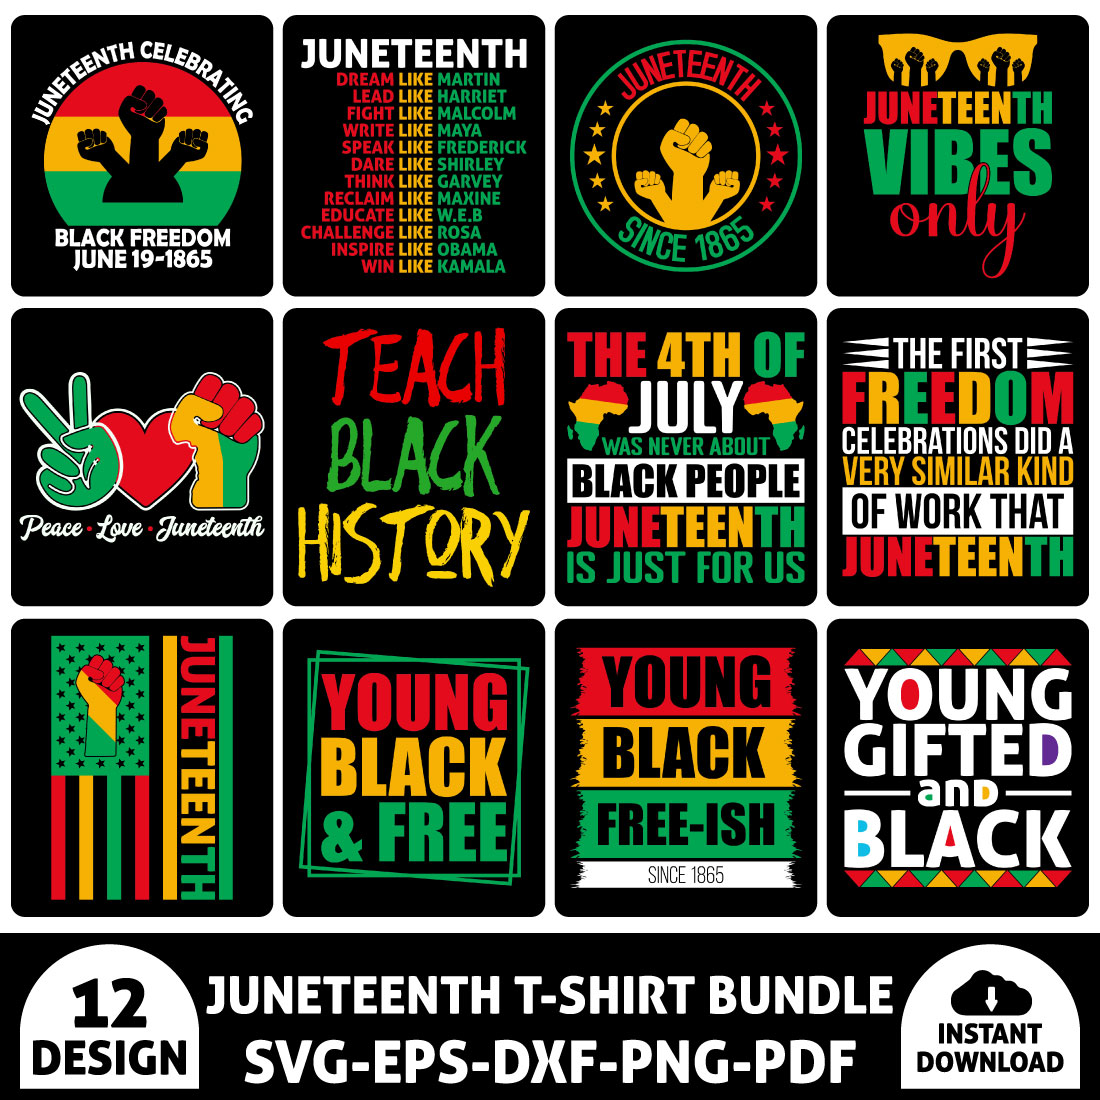 Juneteenth T-Shirt Bundle Vol 1 preview image.